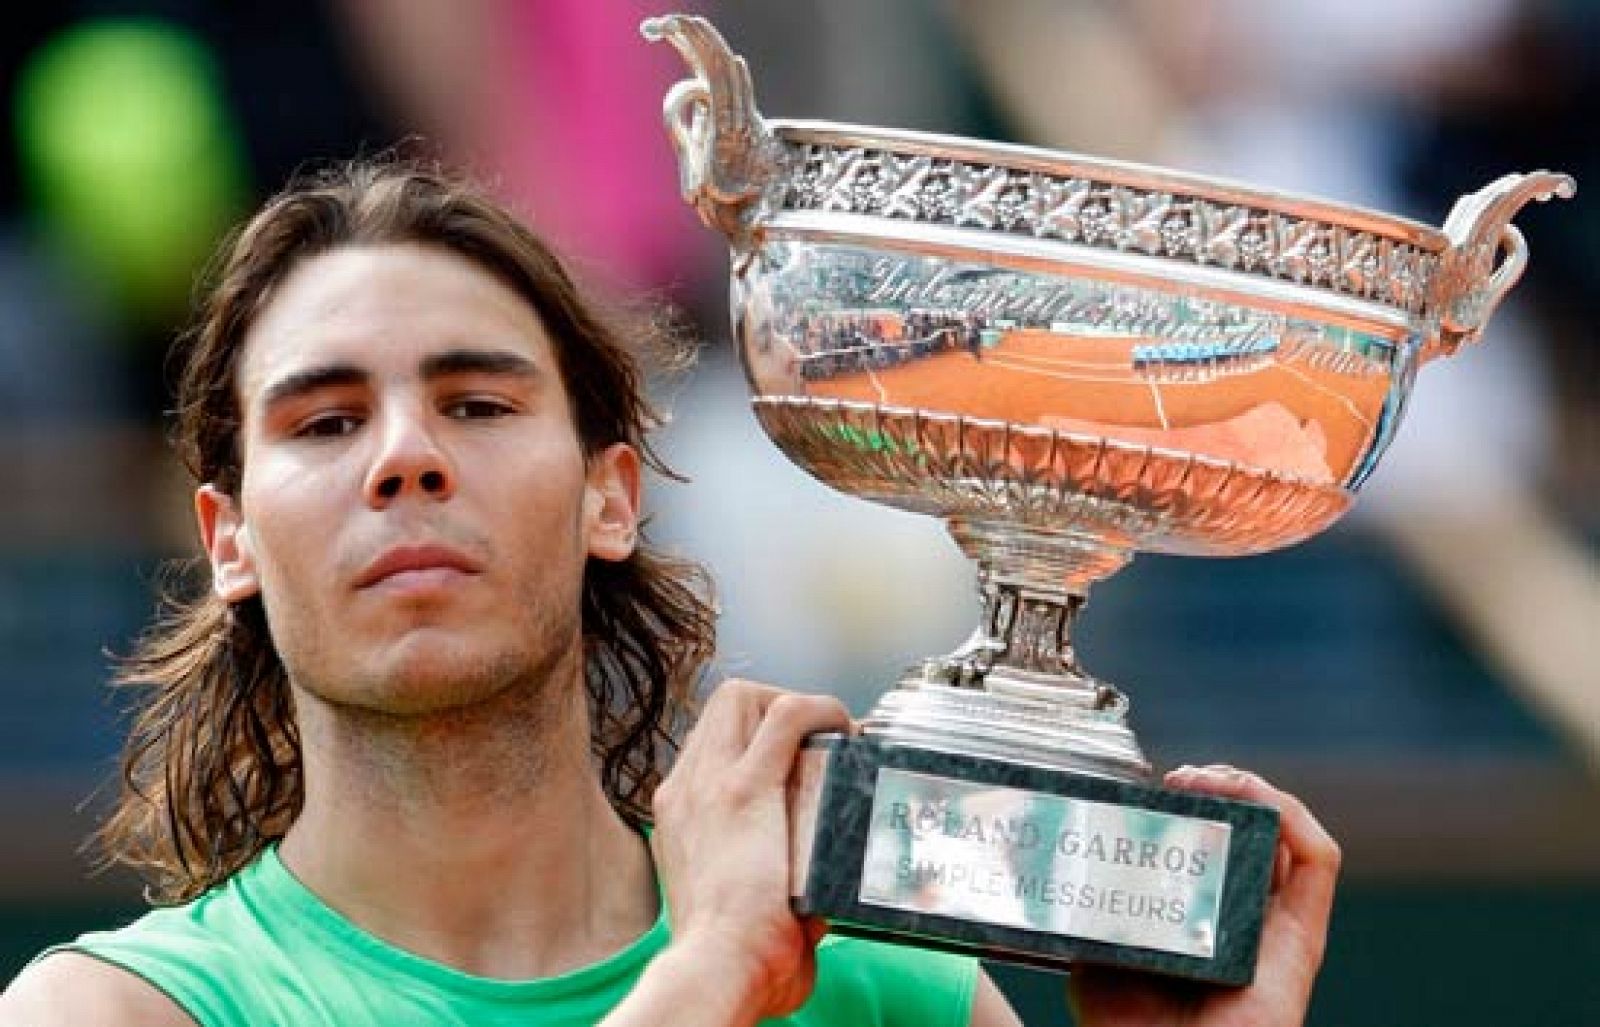  Rafa Nadal consigue imponerse en la tierra a su eterno rival Roger Federer y se hace con su cuarto Roland Garros consecutivo.